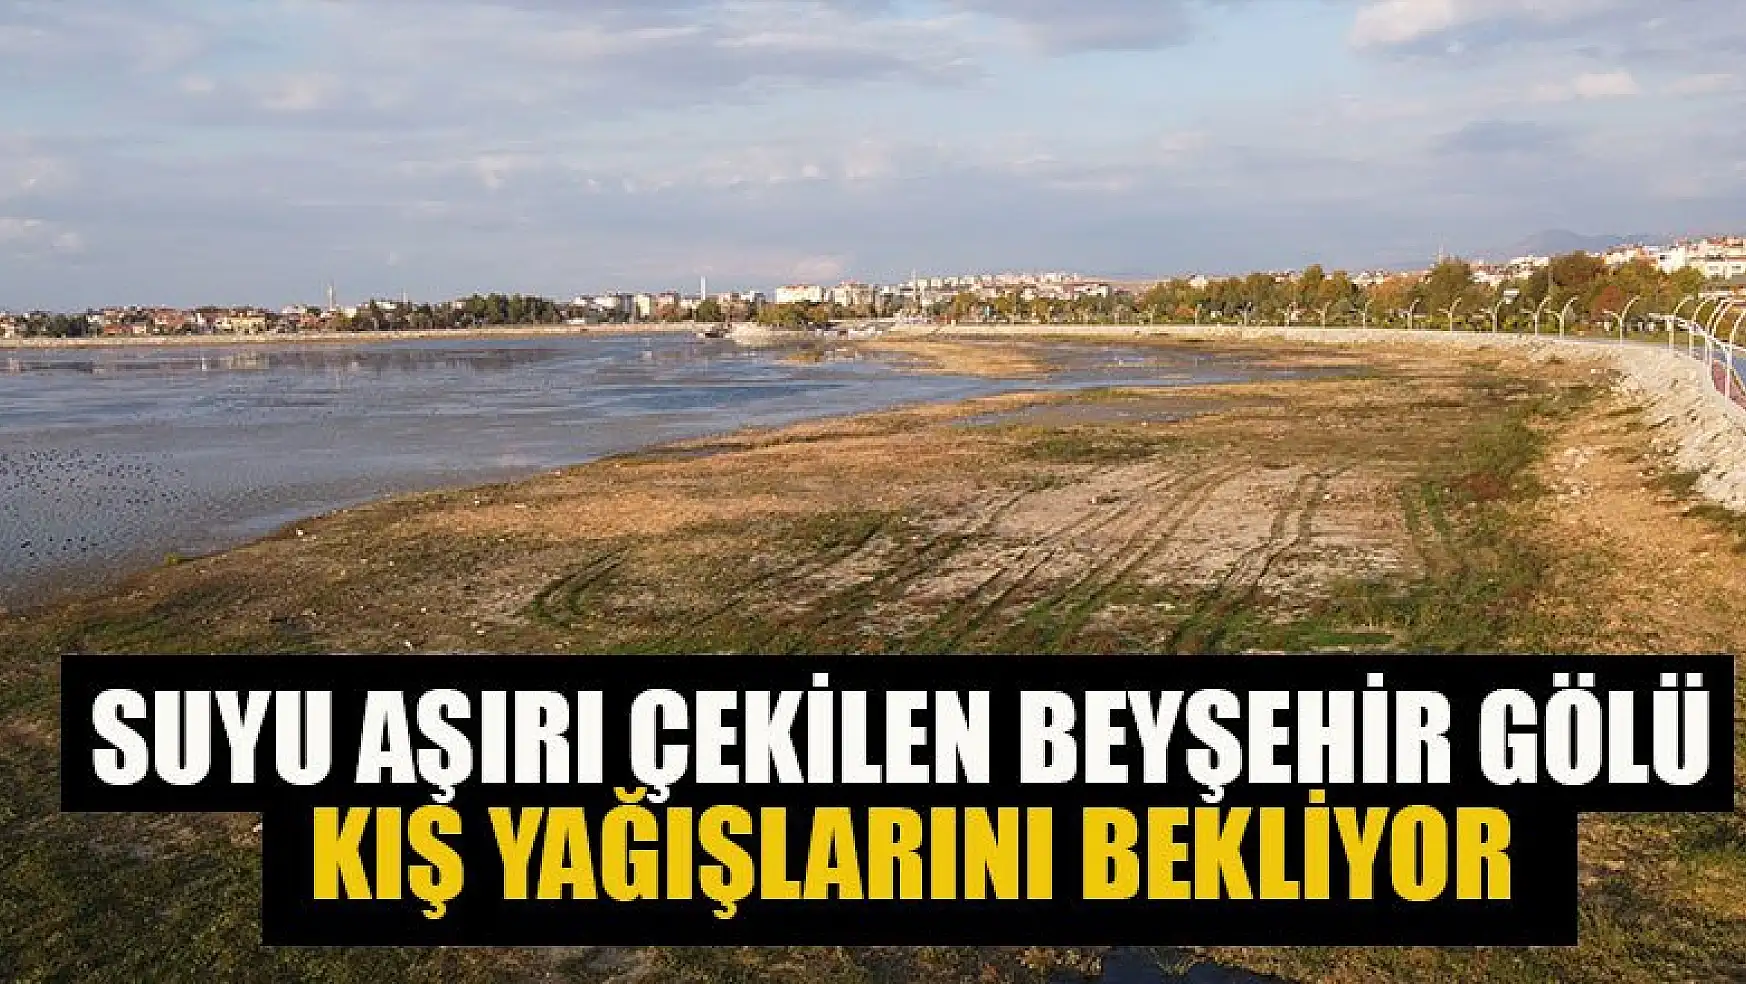 Suyu aşırı çekilen Beyşehir Gölü, kış yağışlarını bekliyor